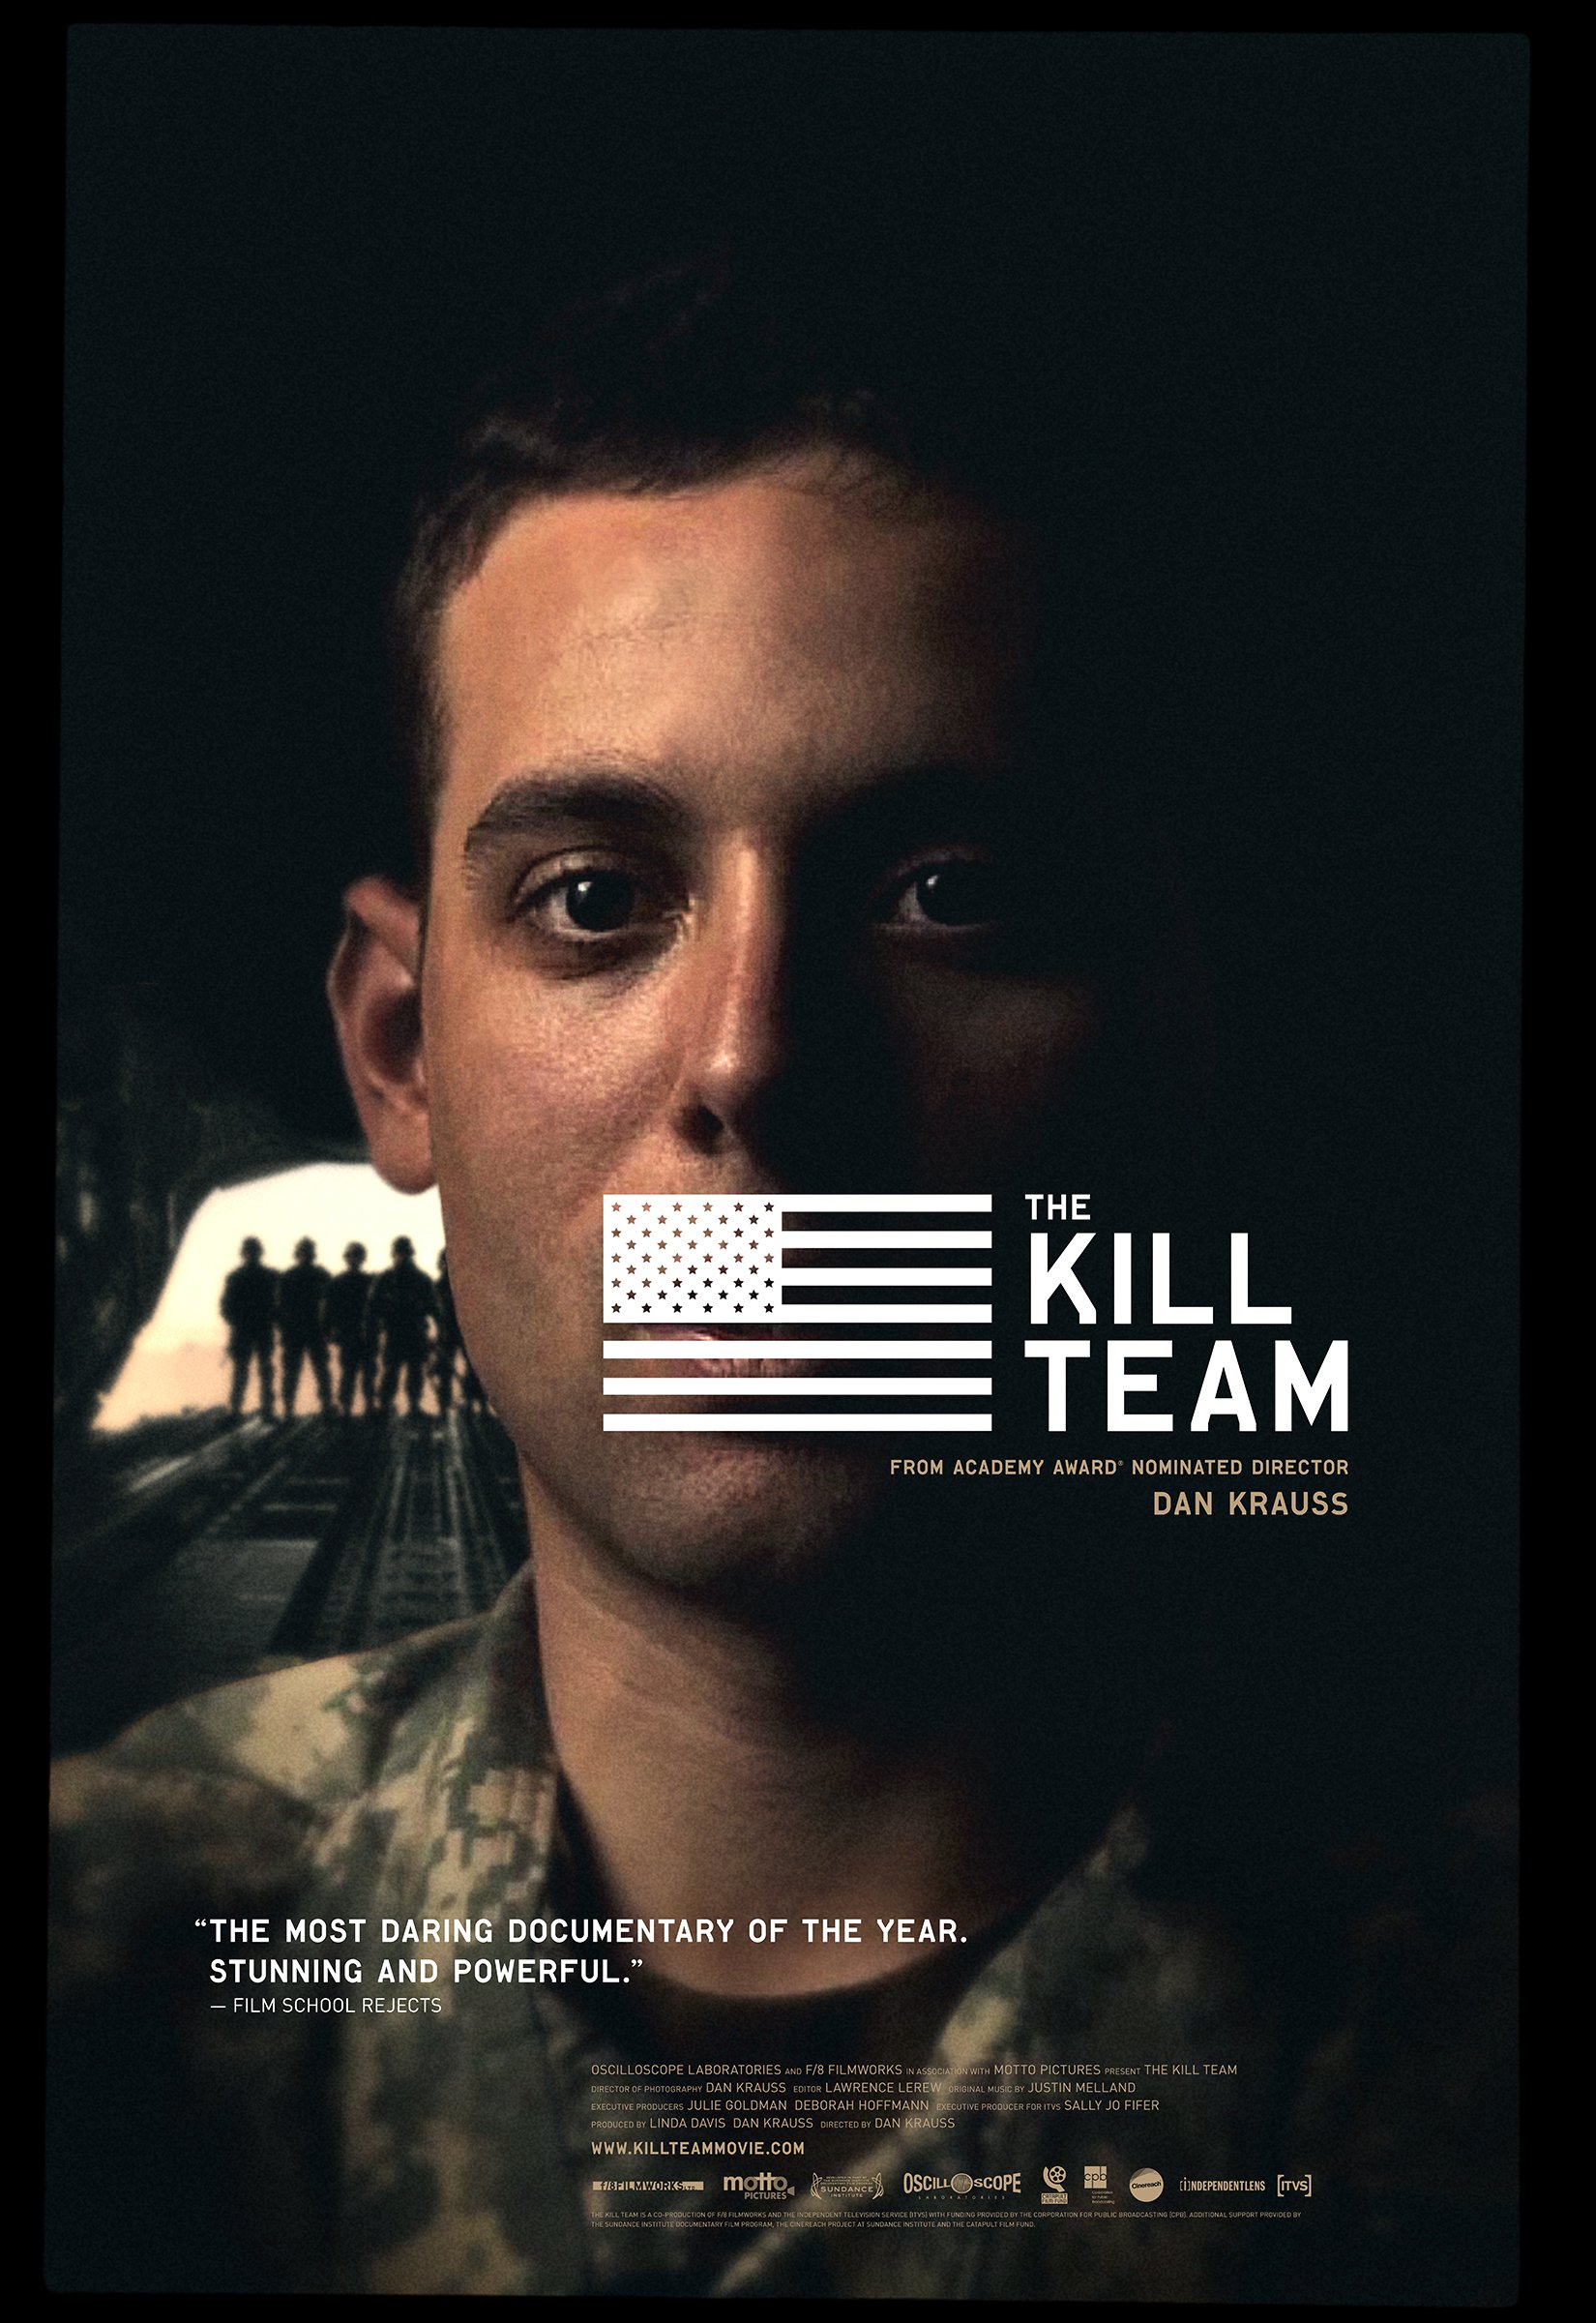 The Kill Team (2013) Movie Reviews - COFCA